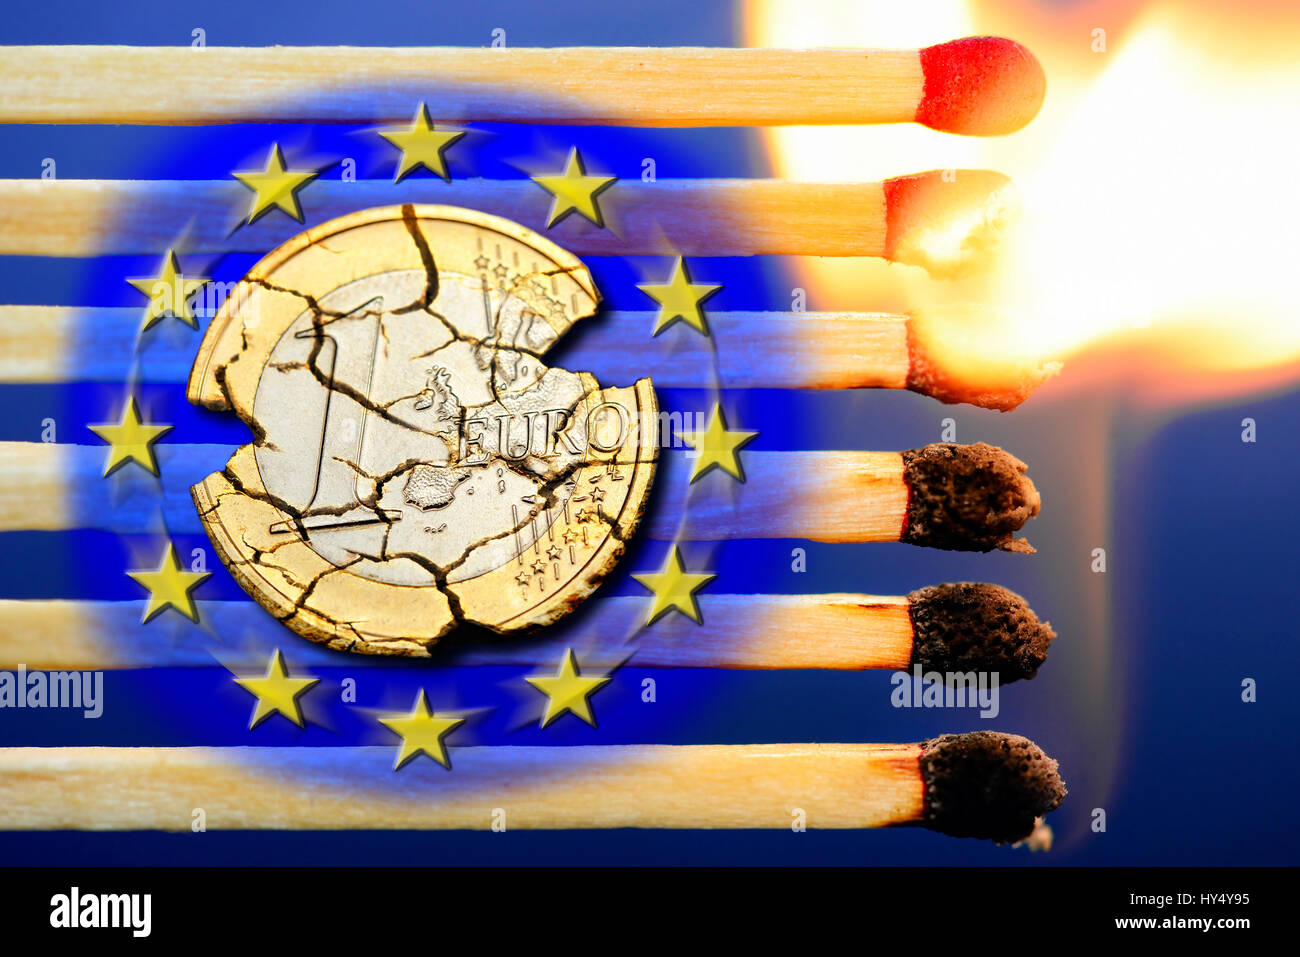 Reazione a catena della combustione di corrispondenze con le stelle dell'UE e eurocoin, simbolico Grexit foto, Kettenreaktion brennender Streichhoelzer mit UE-Sternen und Eurom Foto Stock